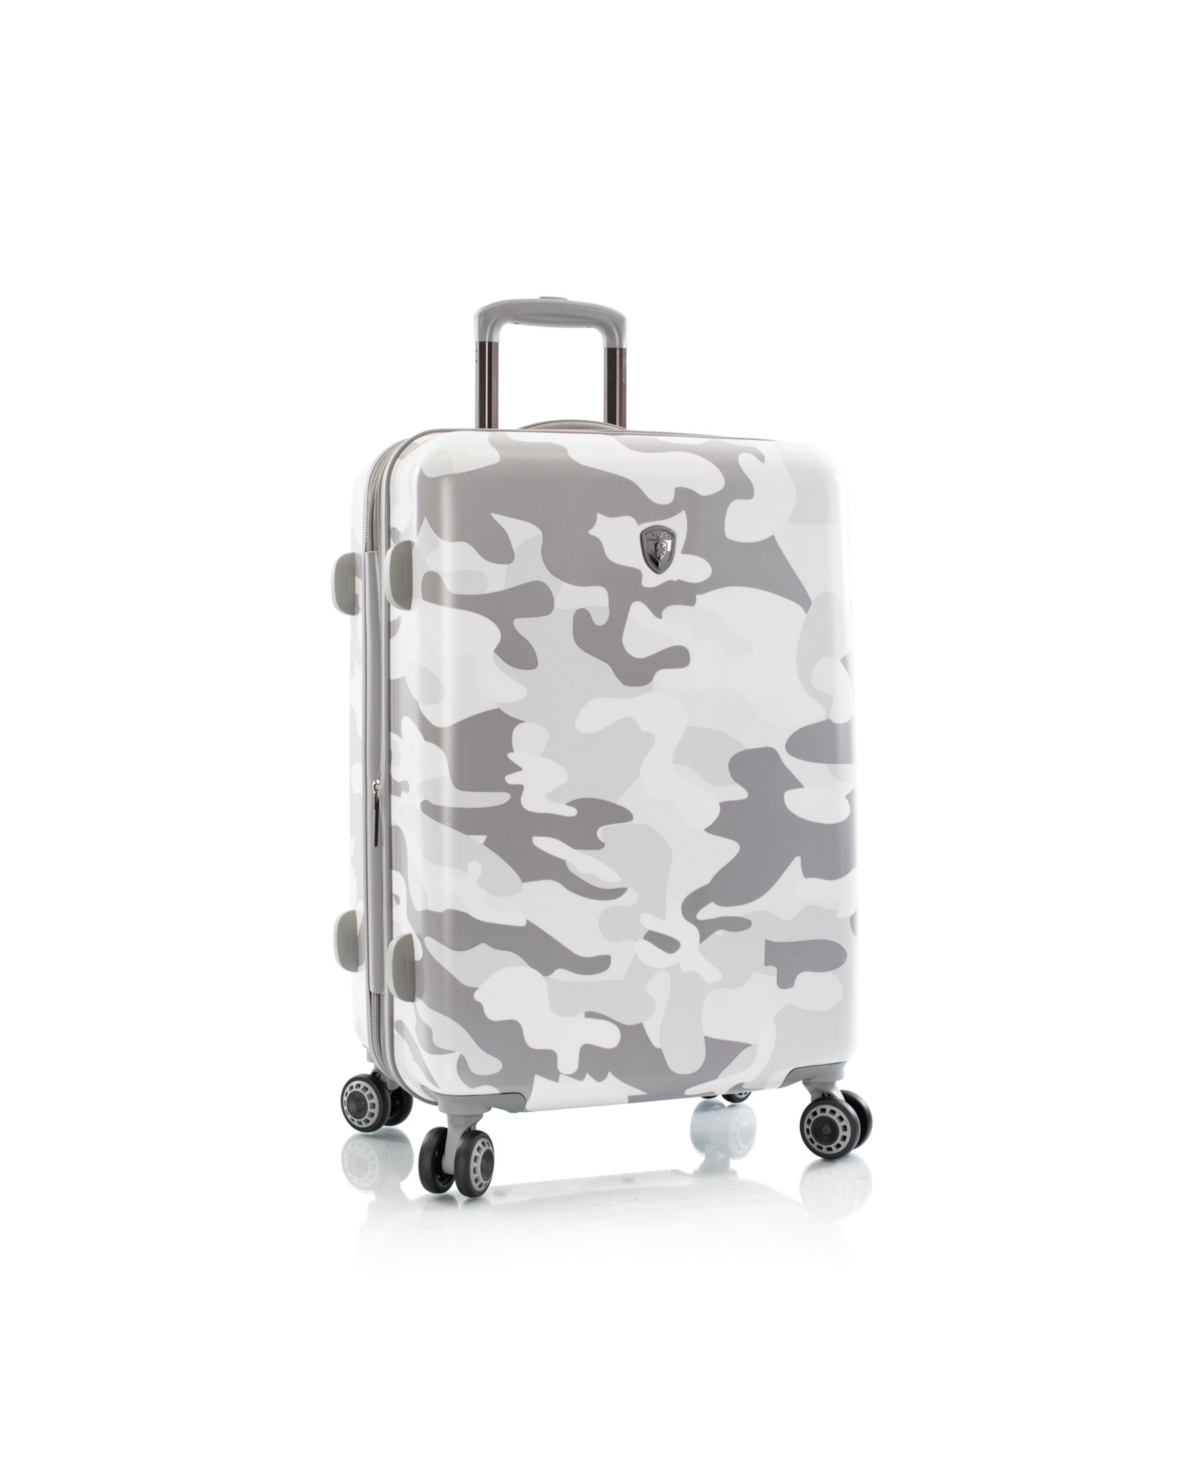 Fashion 26" Hardside Spinner Luggage - White Camo